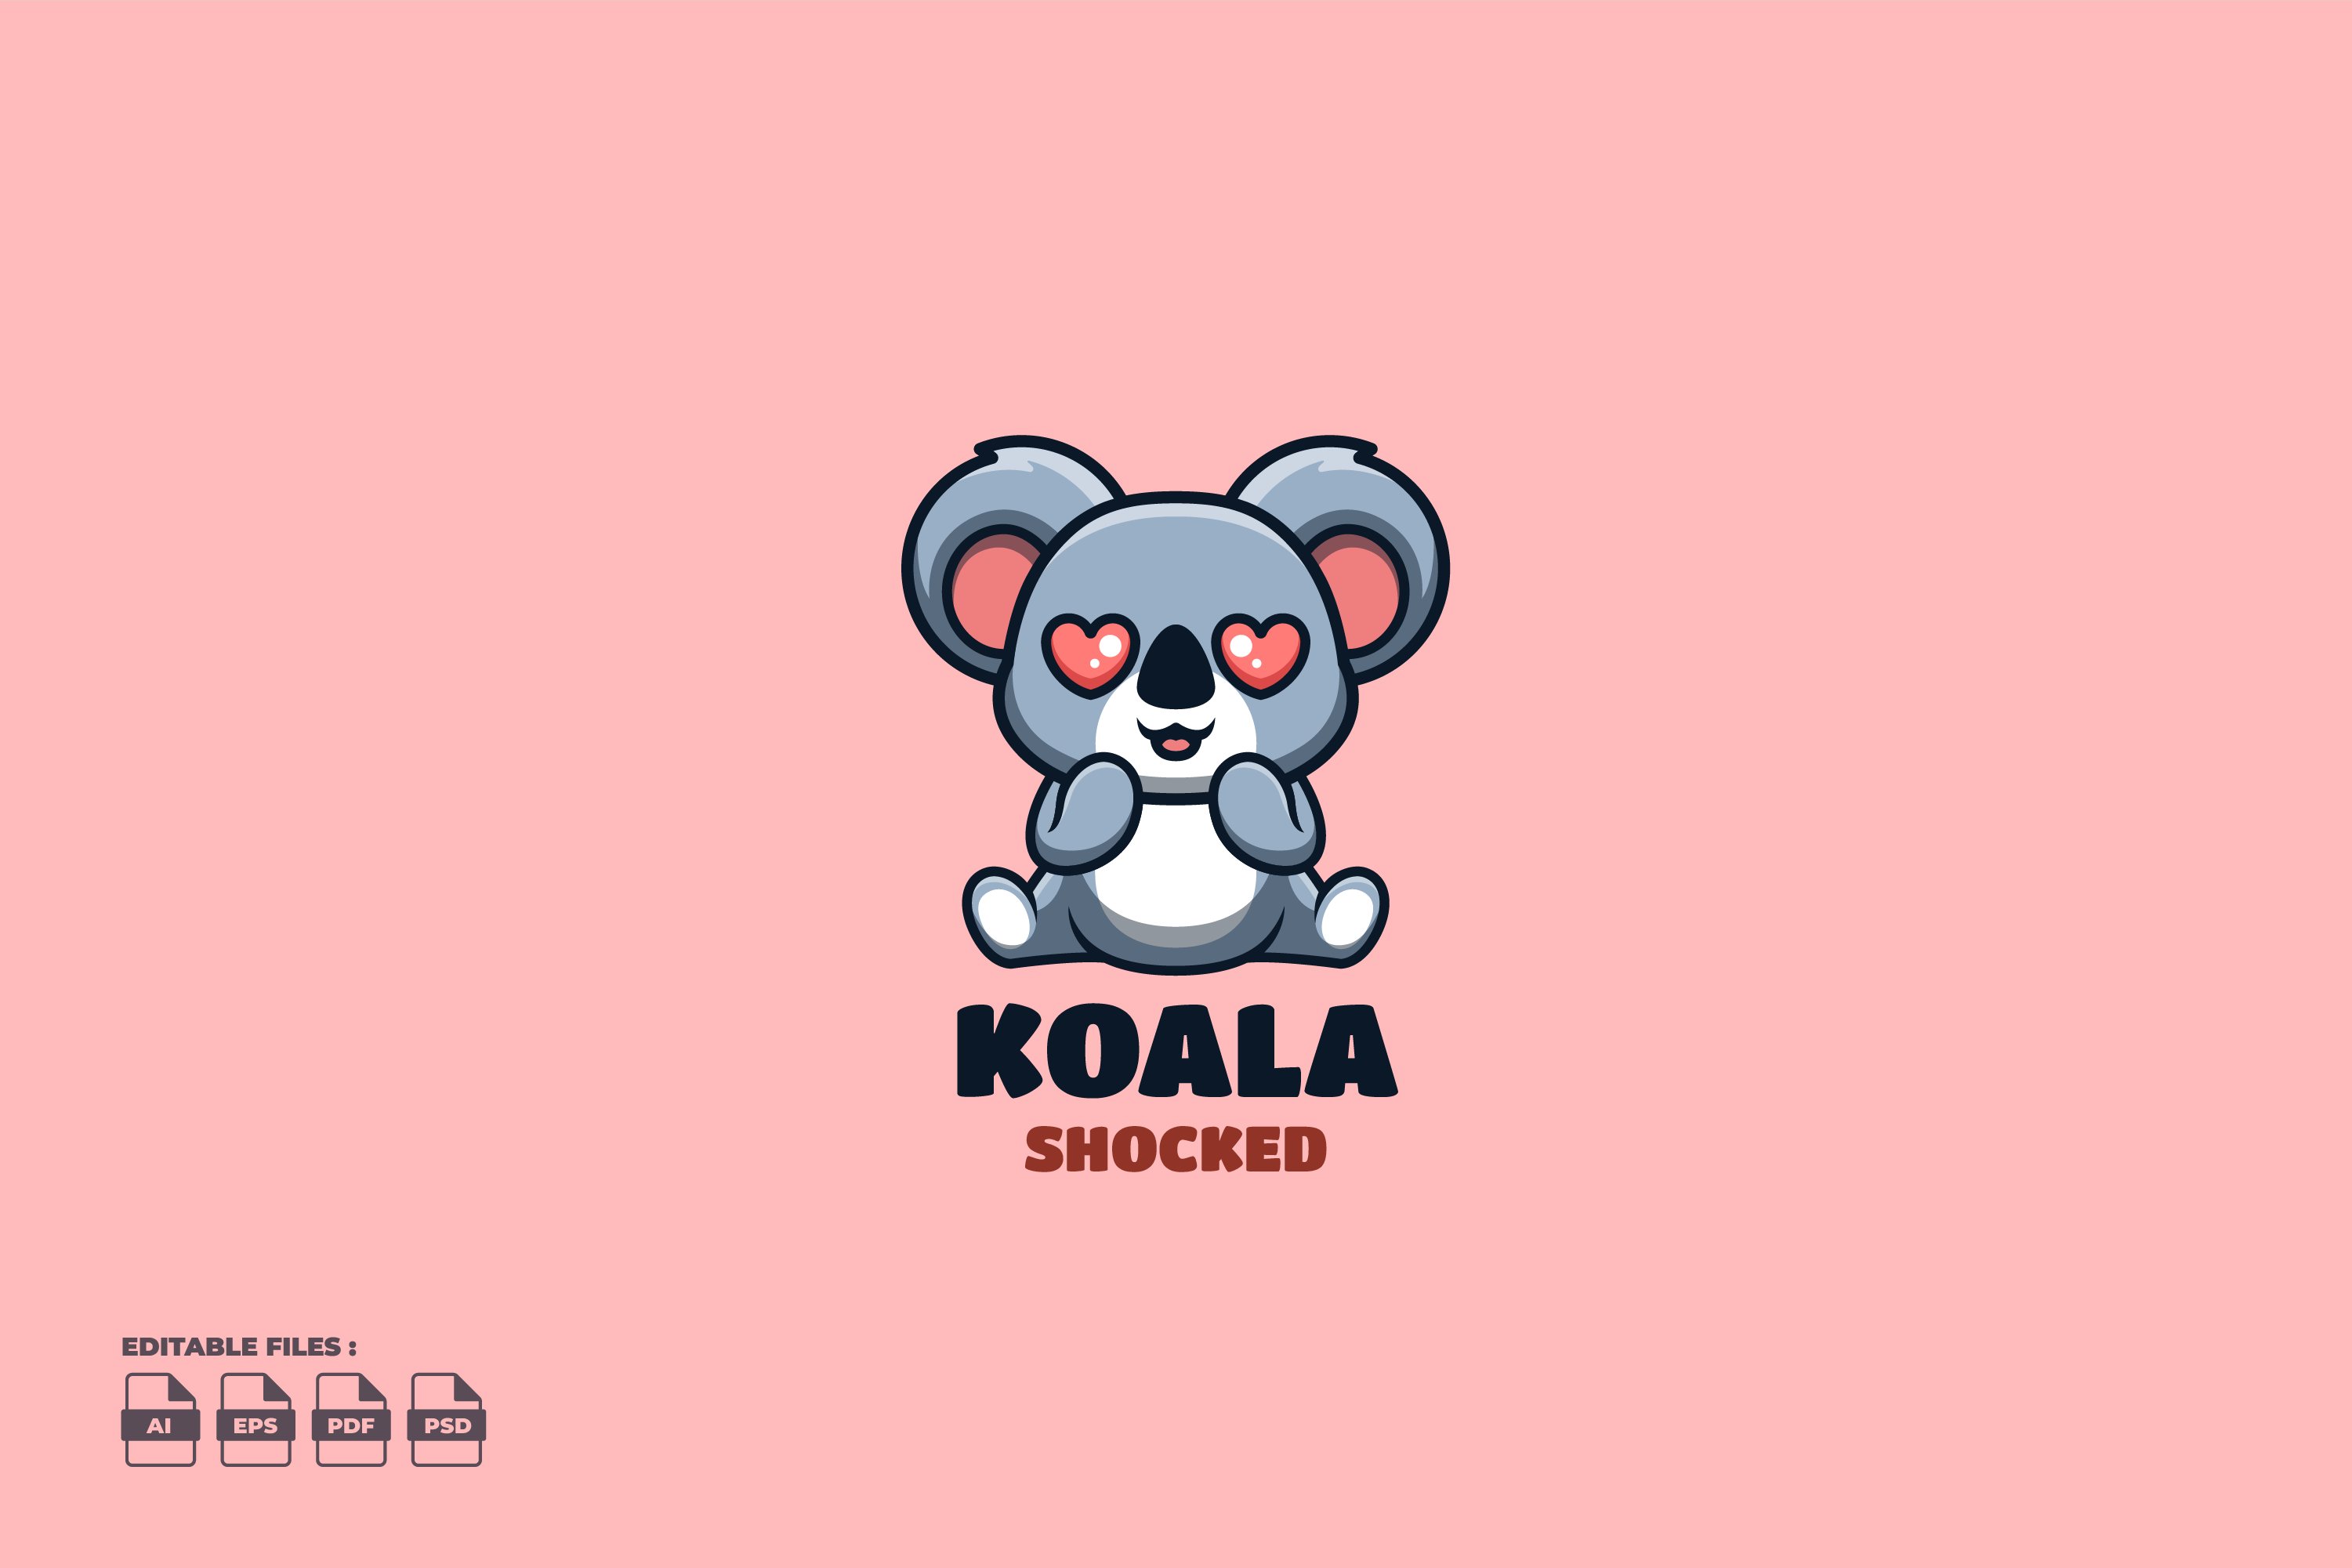 Shocked Koala Cute Mascot Logo cover image.